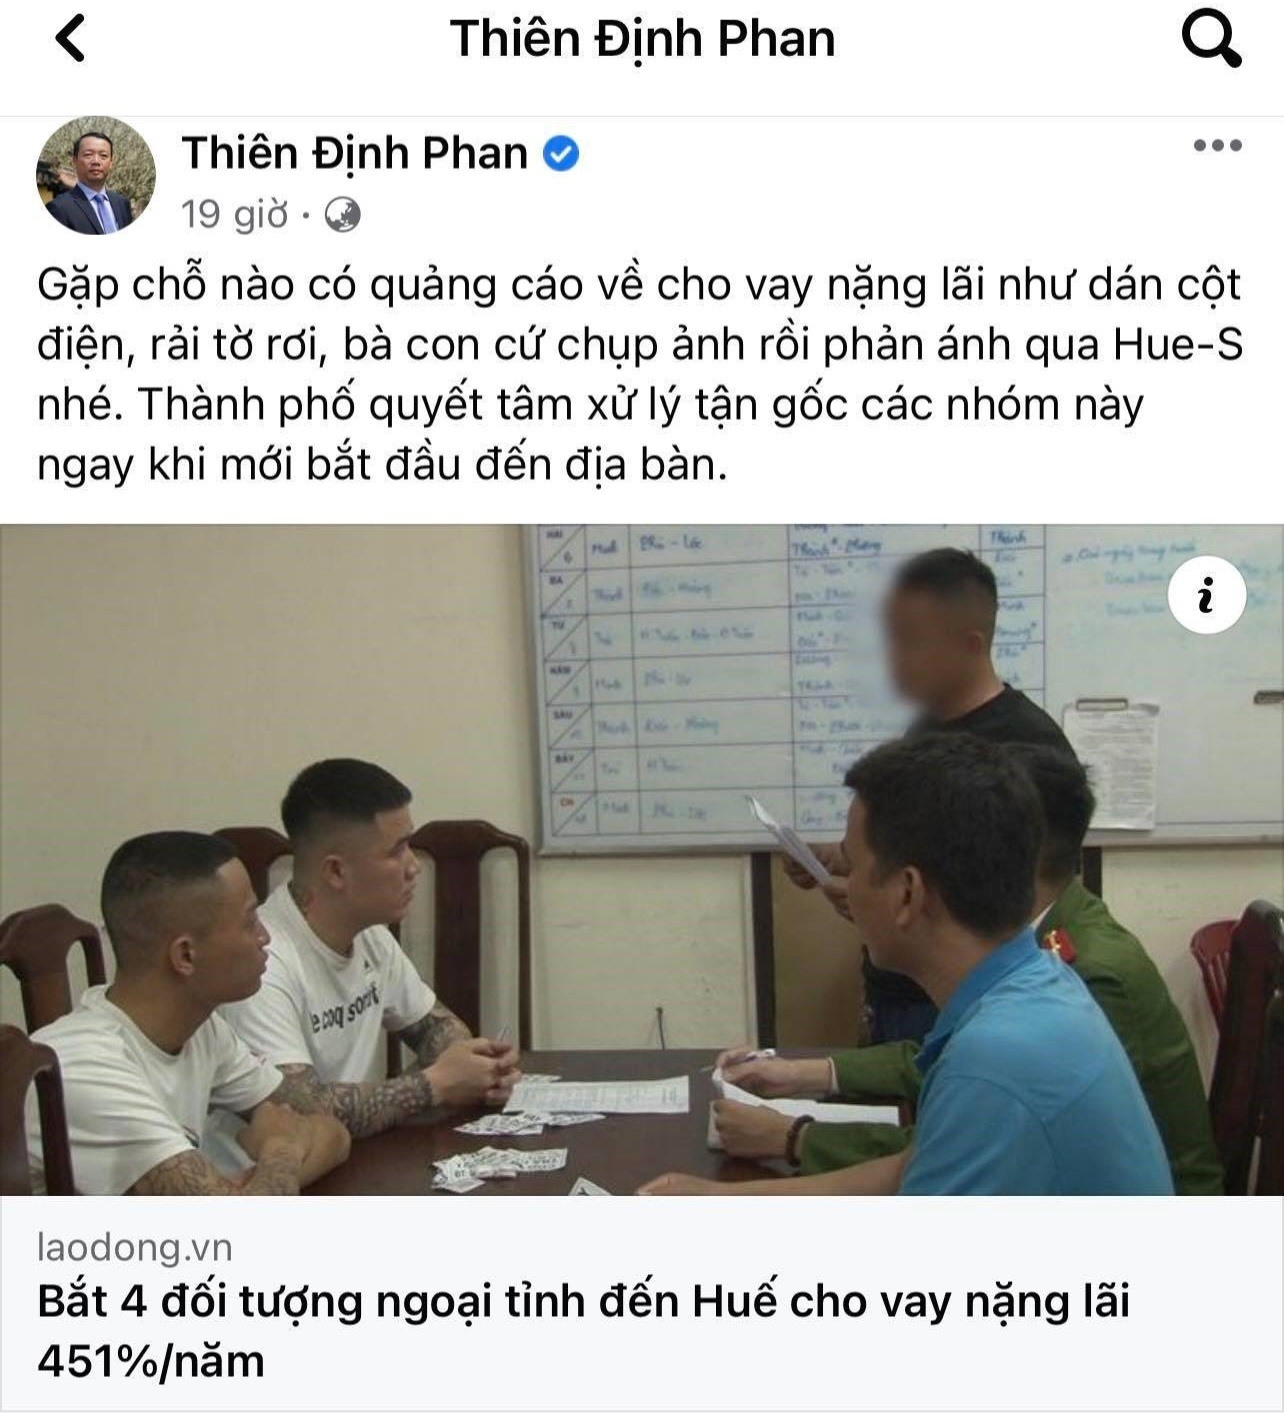 Ông Phan Thiên Định - Bí thư Thành ủy TP. Huế đã dẫn bài báo Lao Động lên trang cá nhân kèm theo lời kêu gọi người dân tố giác tội phạm cho vay nặng lãi.